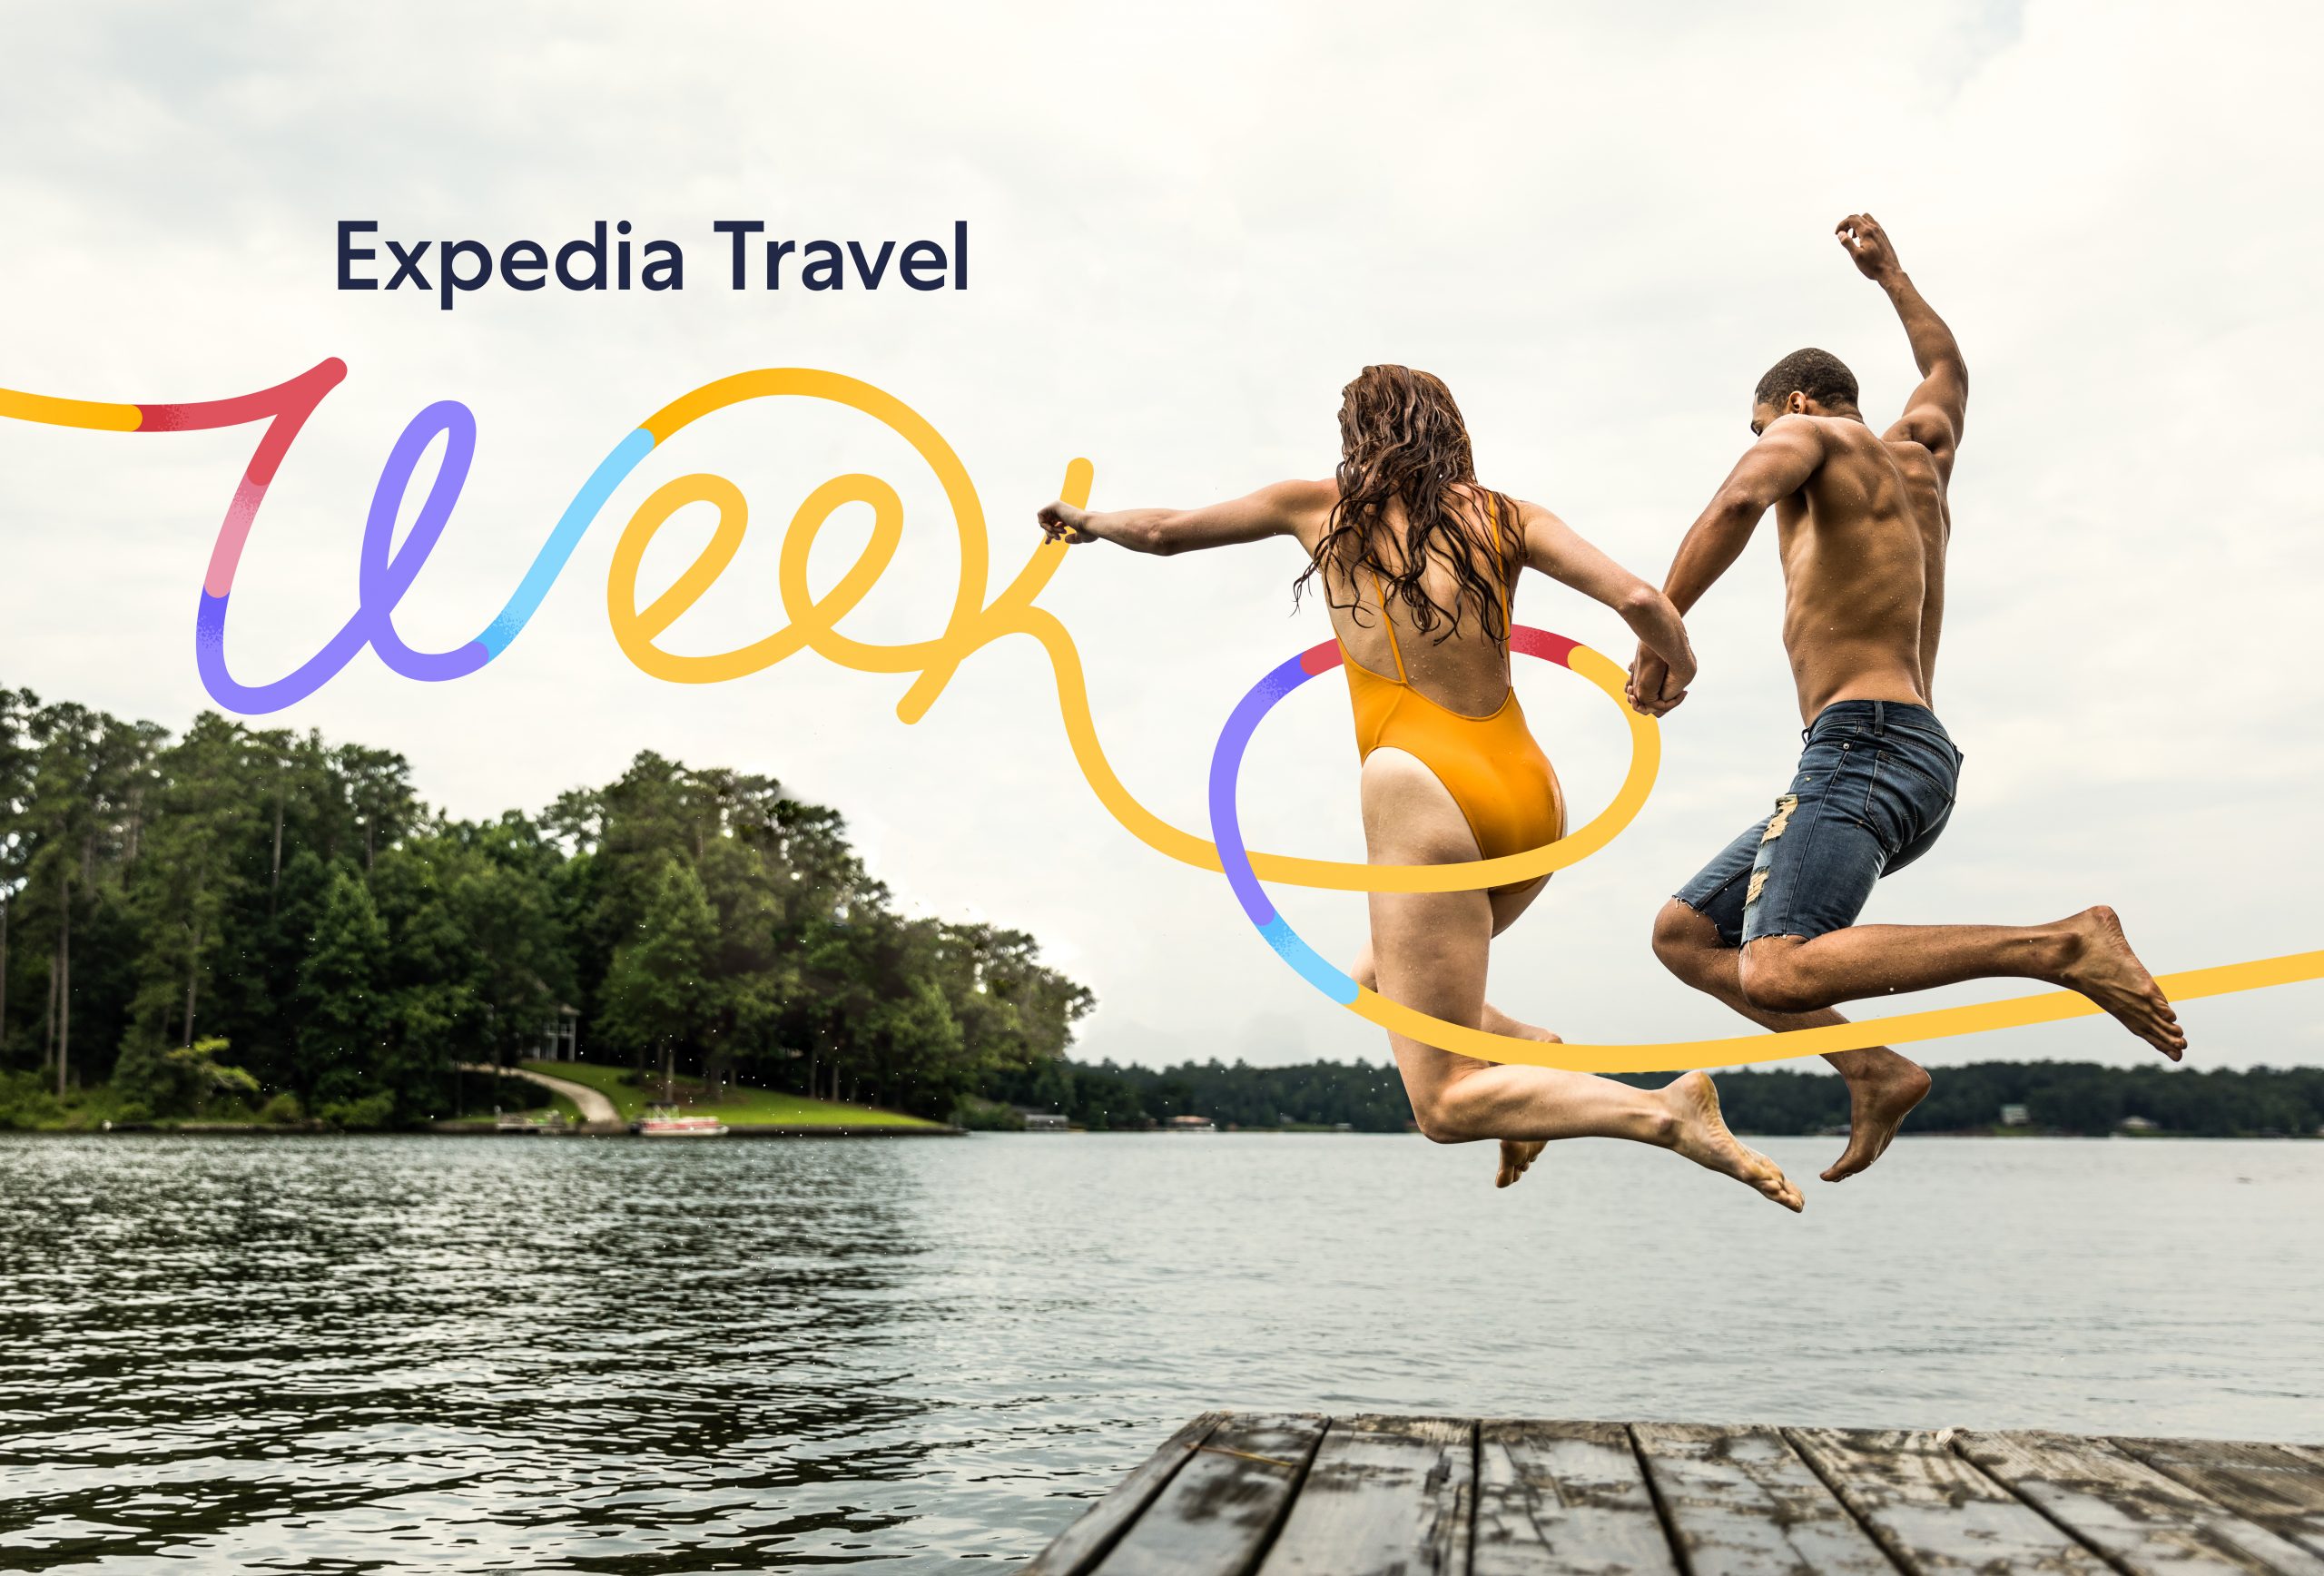 Expedia feiert Wiederaufschwung der Reisebranche mit der ersten Expedia Travel Week